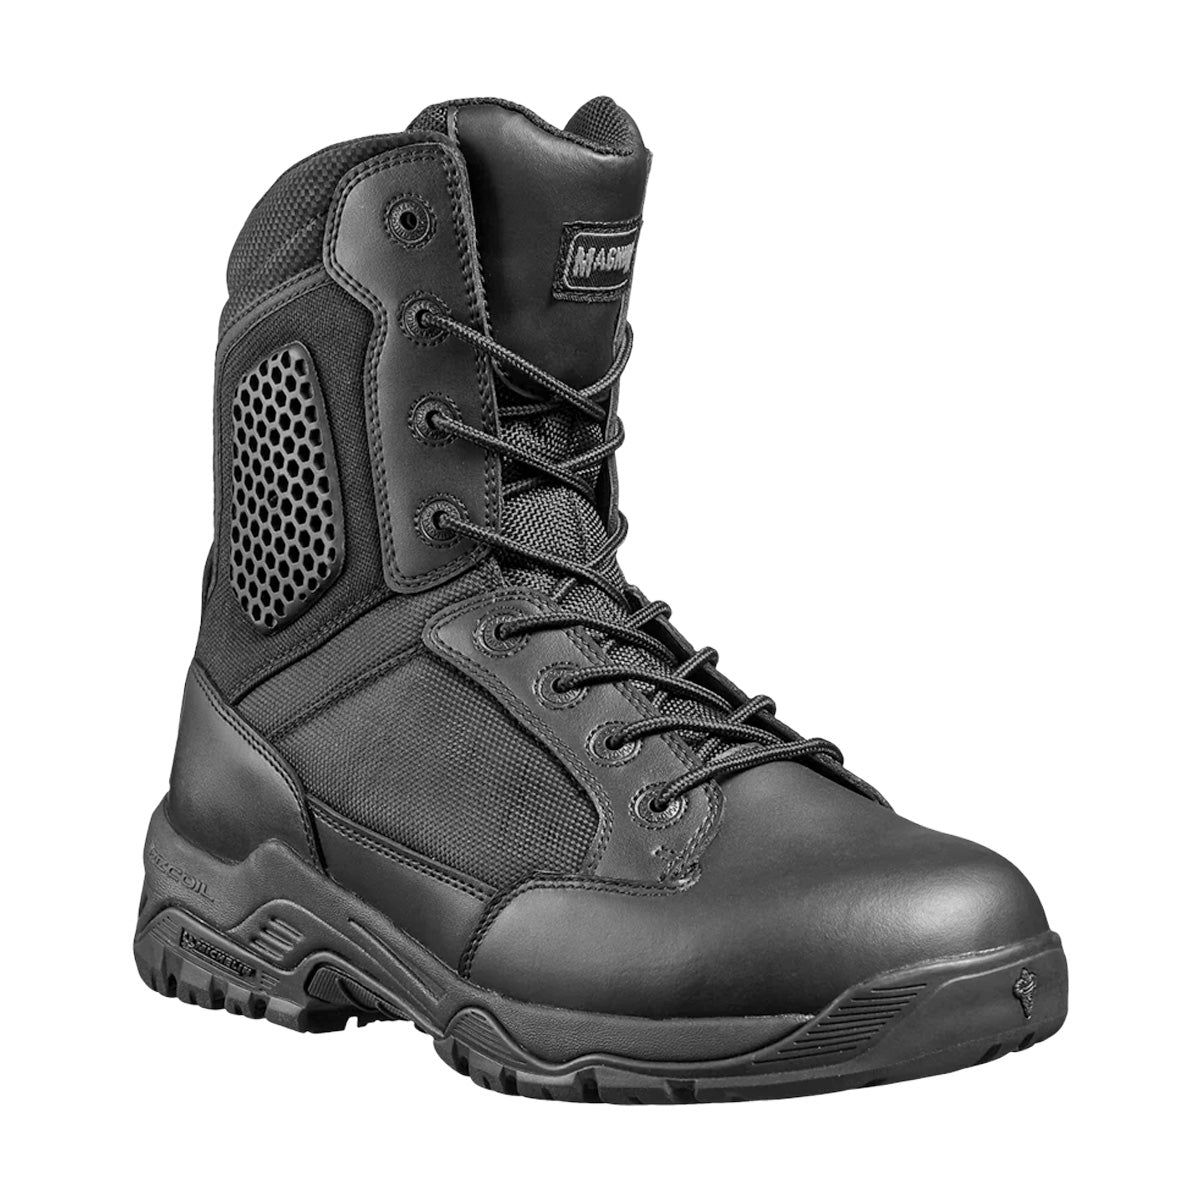 Magnum Strike Force 8.0 Side-Zip Waterproof Boot Black Footwear Magnum Footwear Tactical Gear Supplier Tactical Distributors Australia